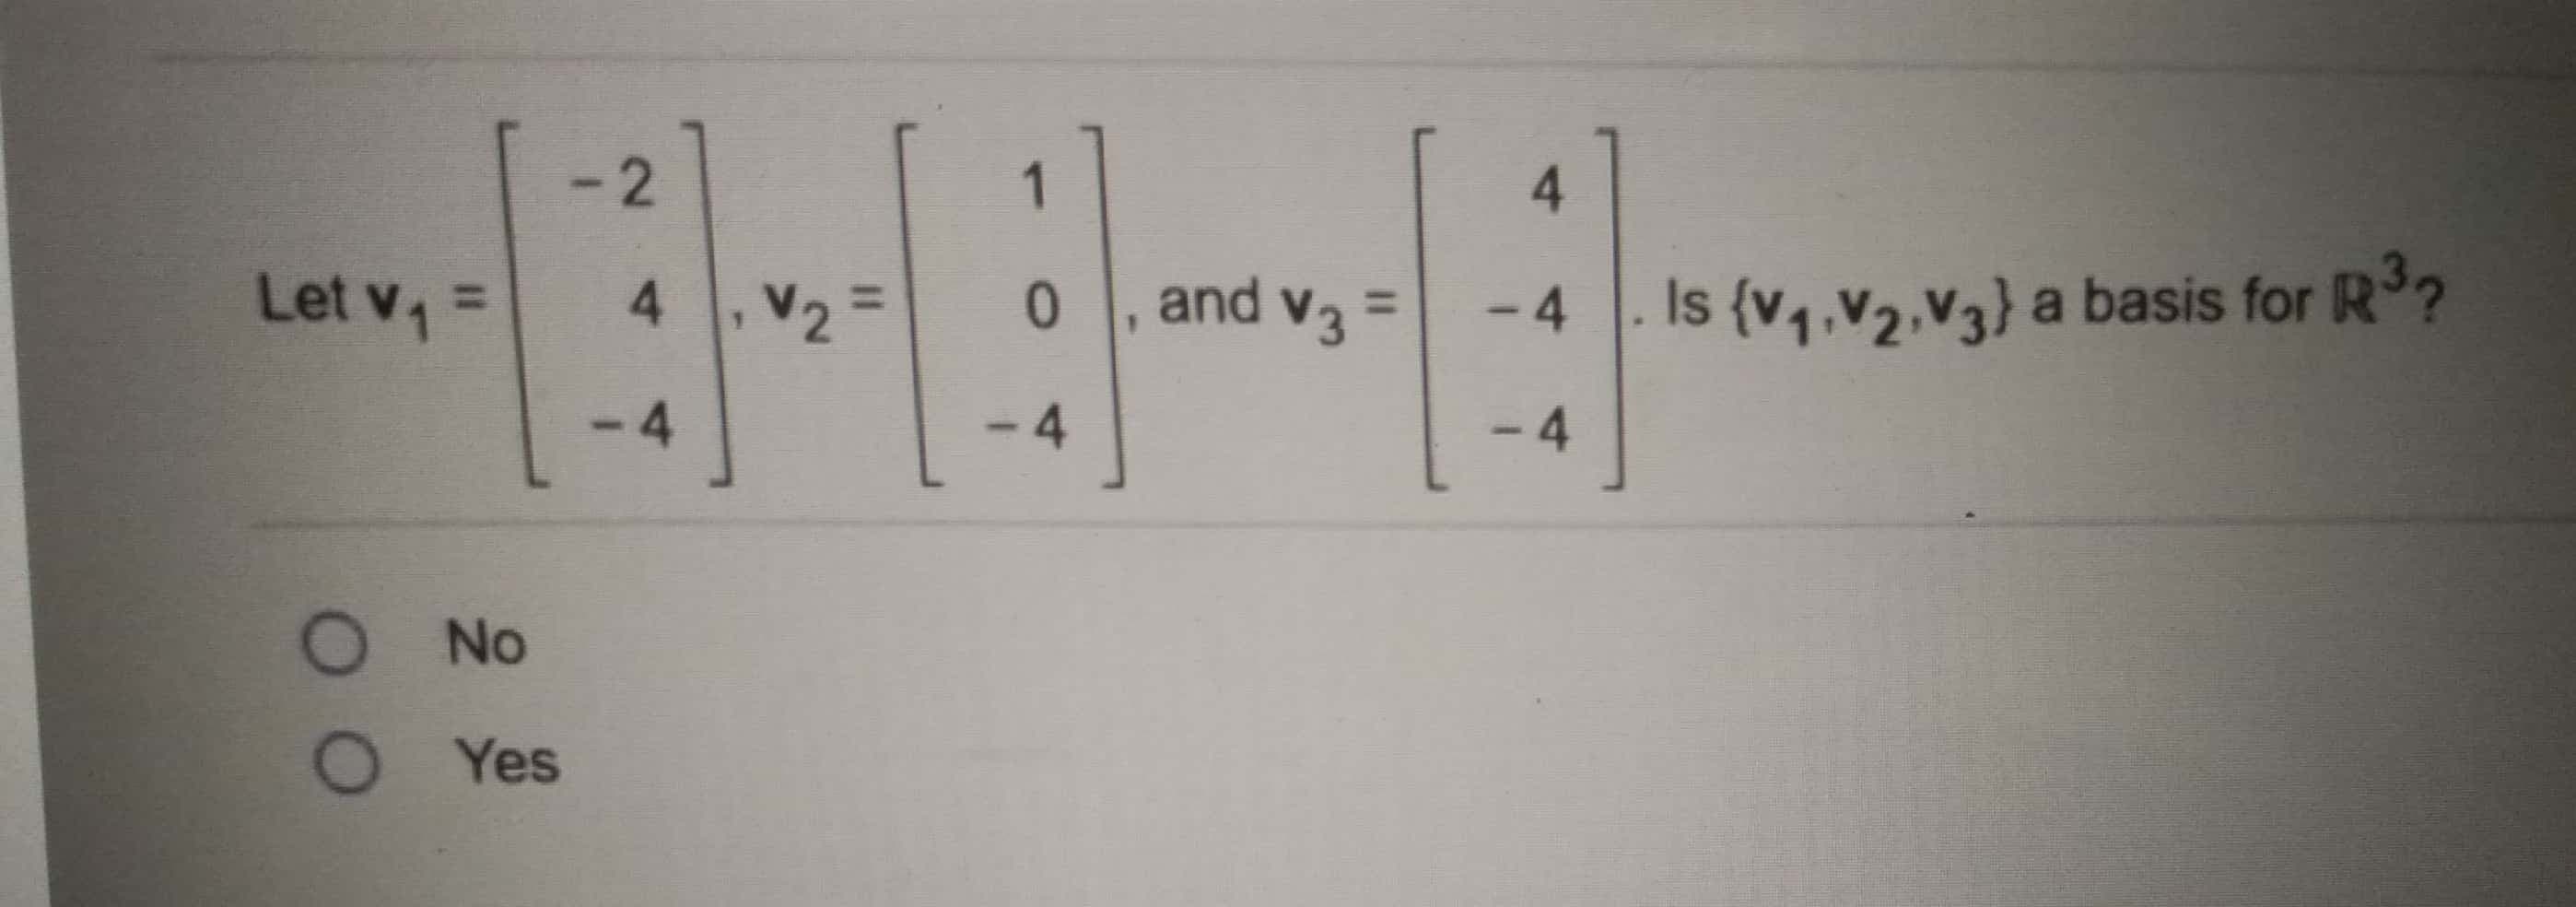 - 2
1
4.
Let v =
and v3 =
Is {v4,V2,V3} a basis for R3?
4.
%3D
0.
%3D
V2 =
-4
%3D
-4
- 4
- 4
O No
O Yes
